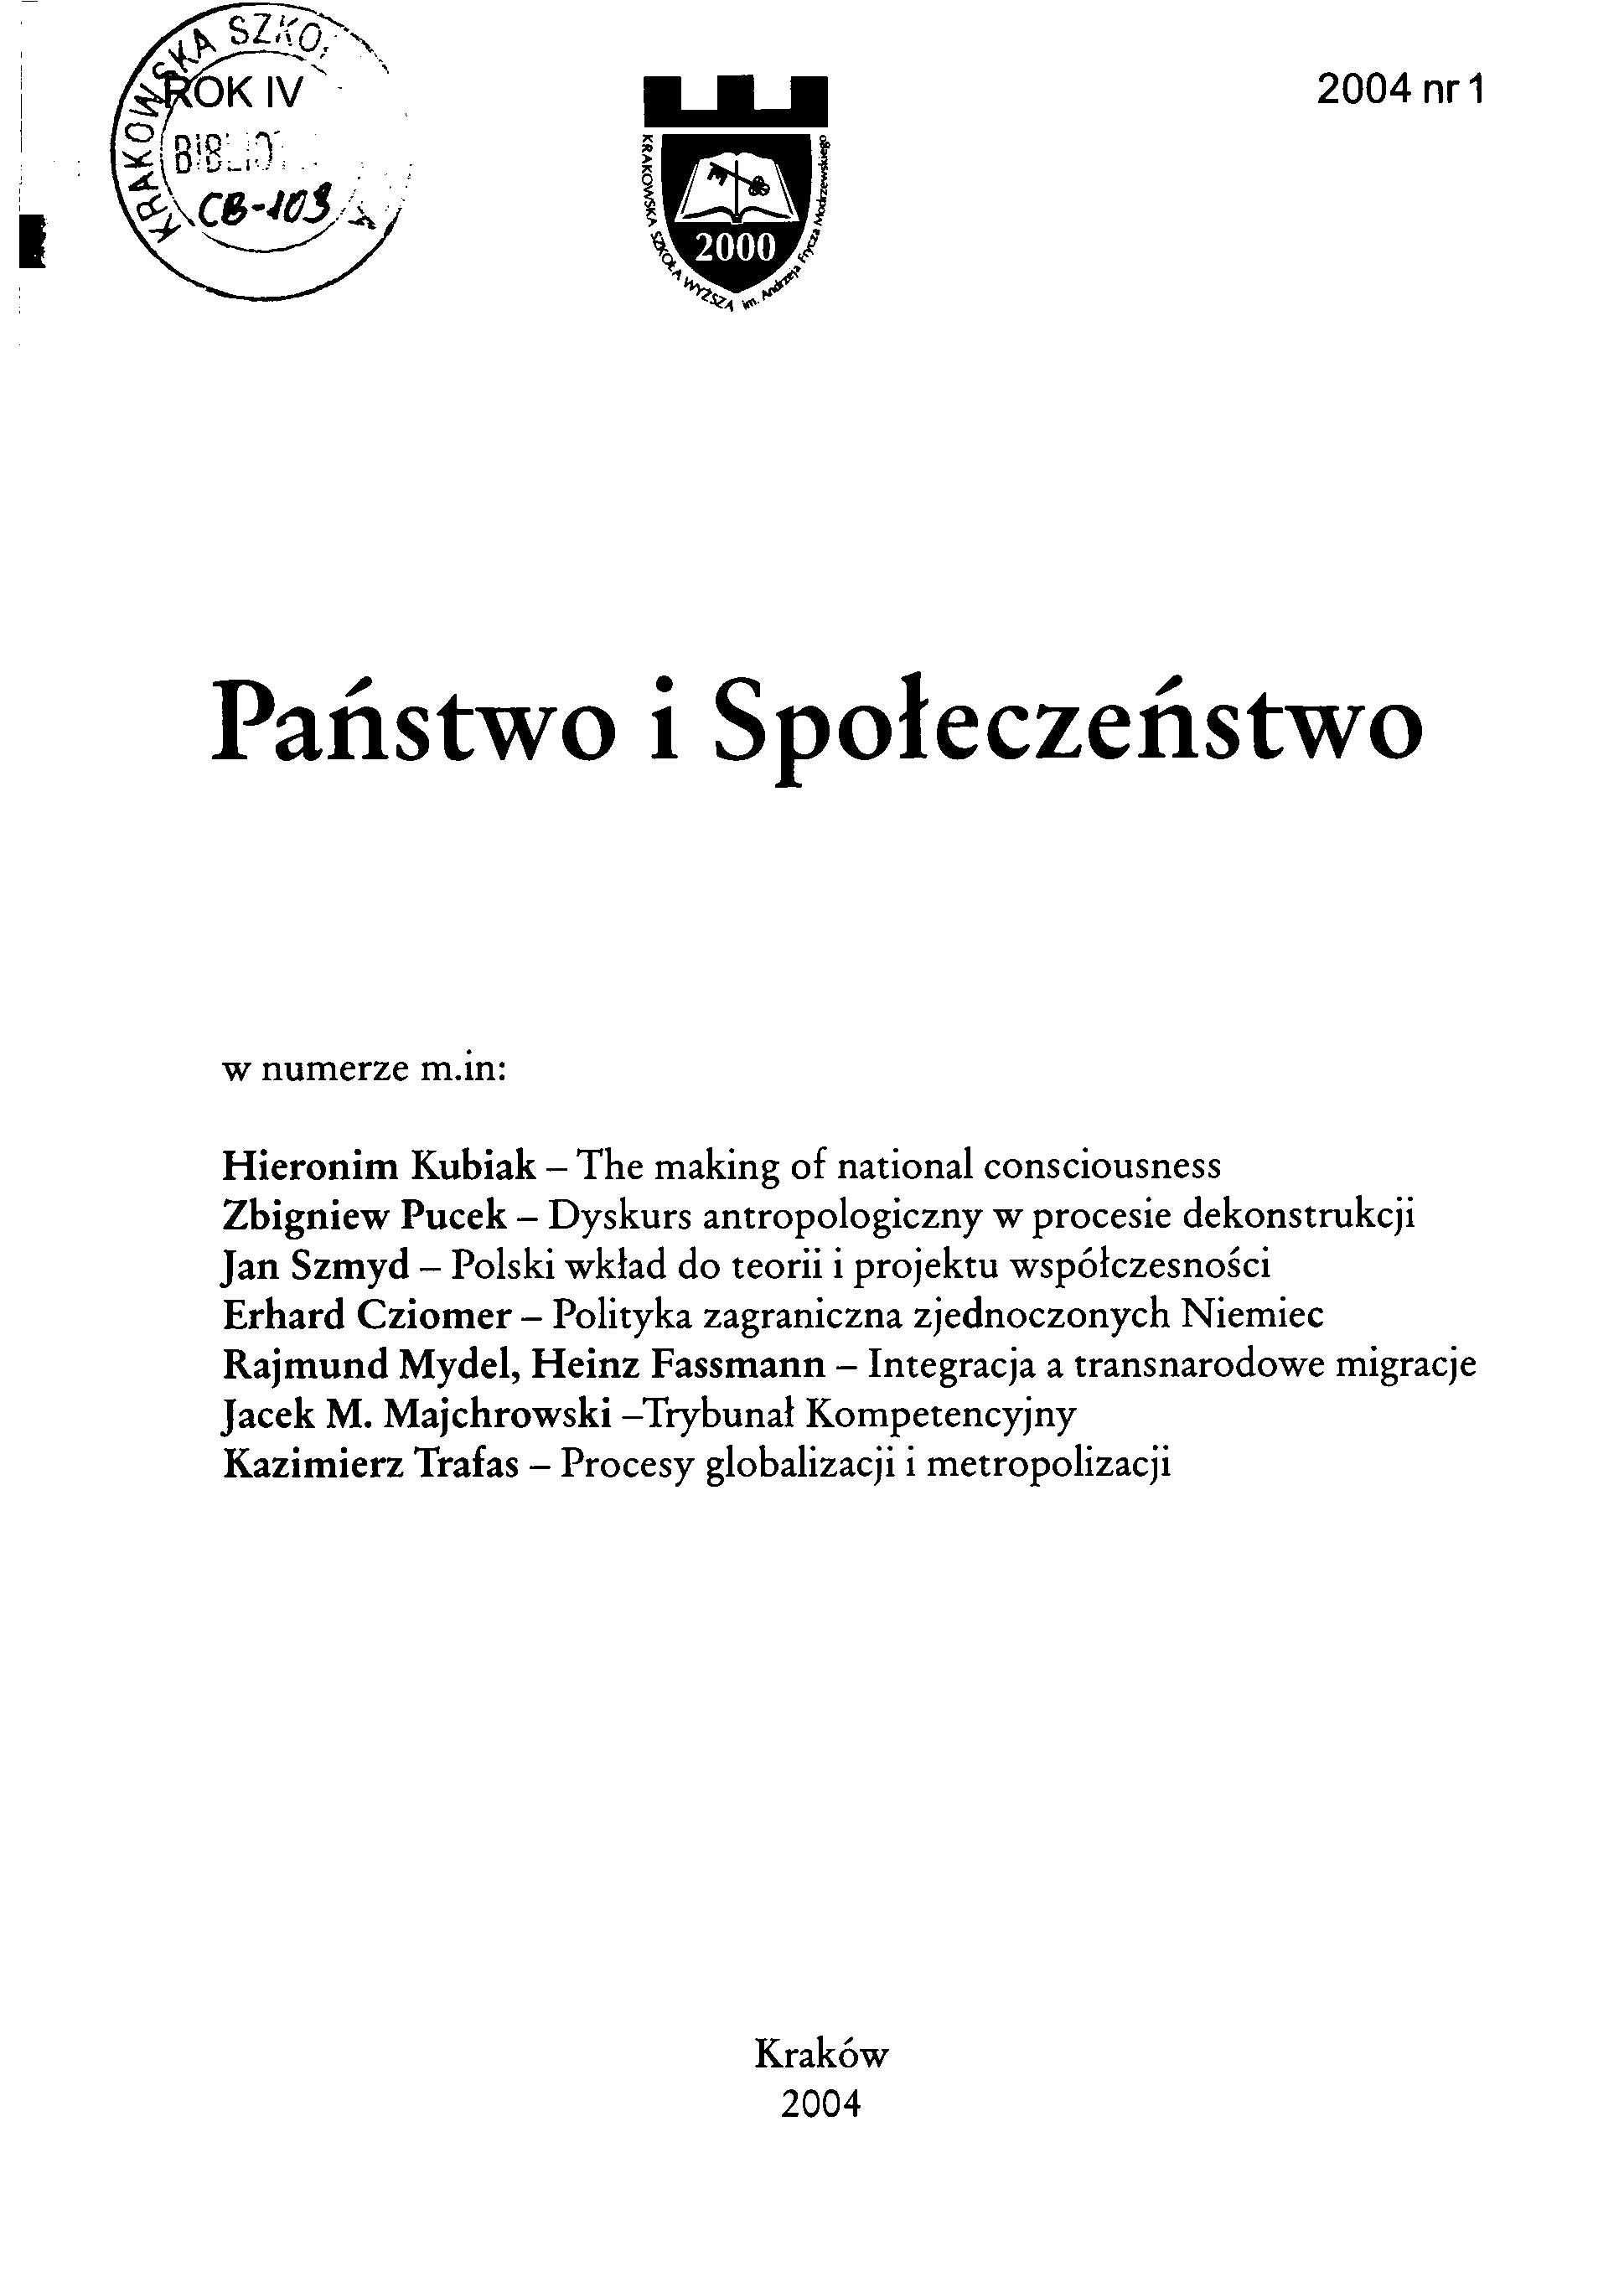 Polski wkład do teorii i projektu współczesności (Zygmunt Bauman i Józef Bańka)